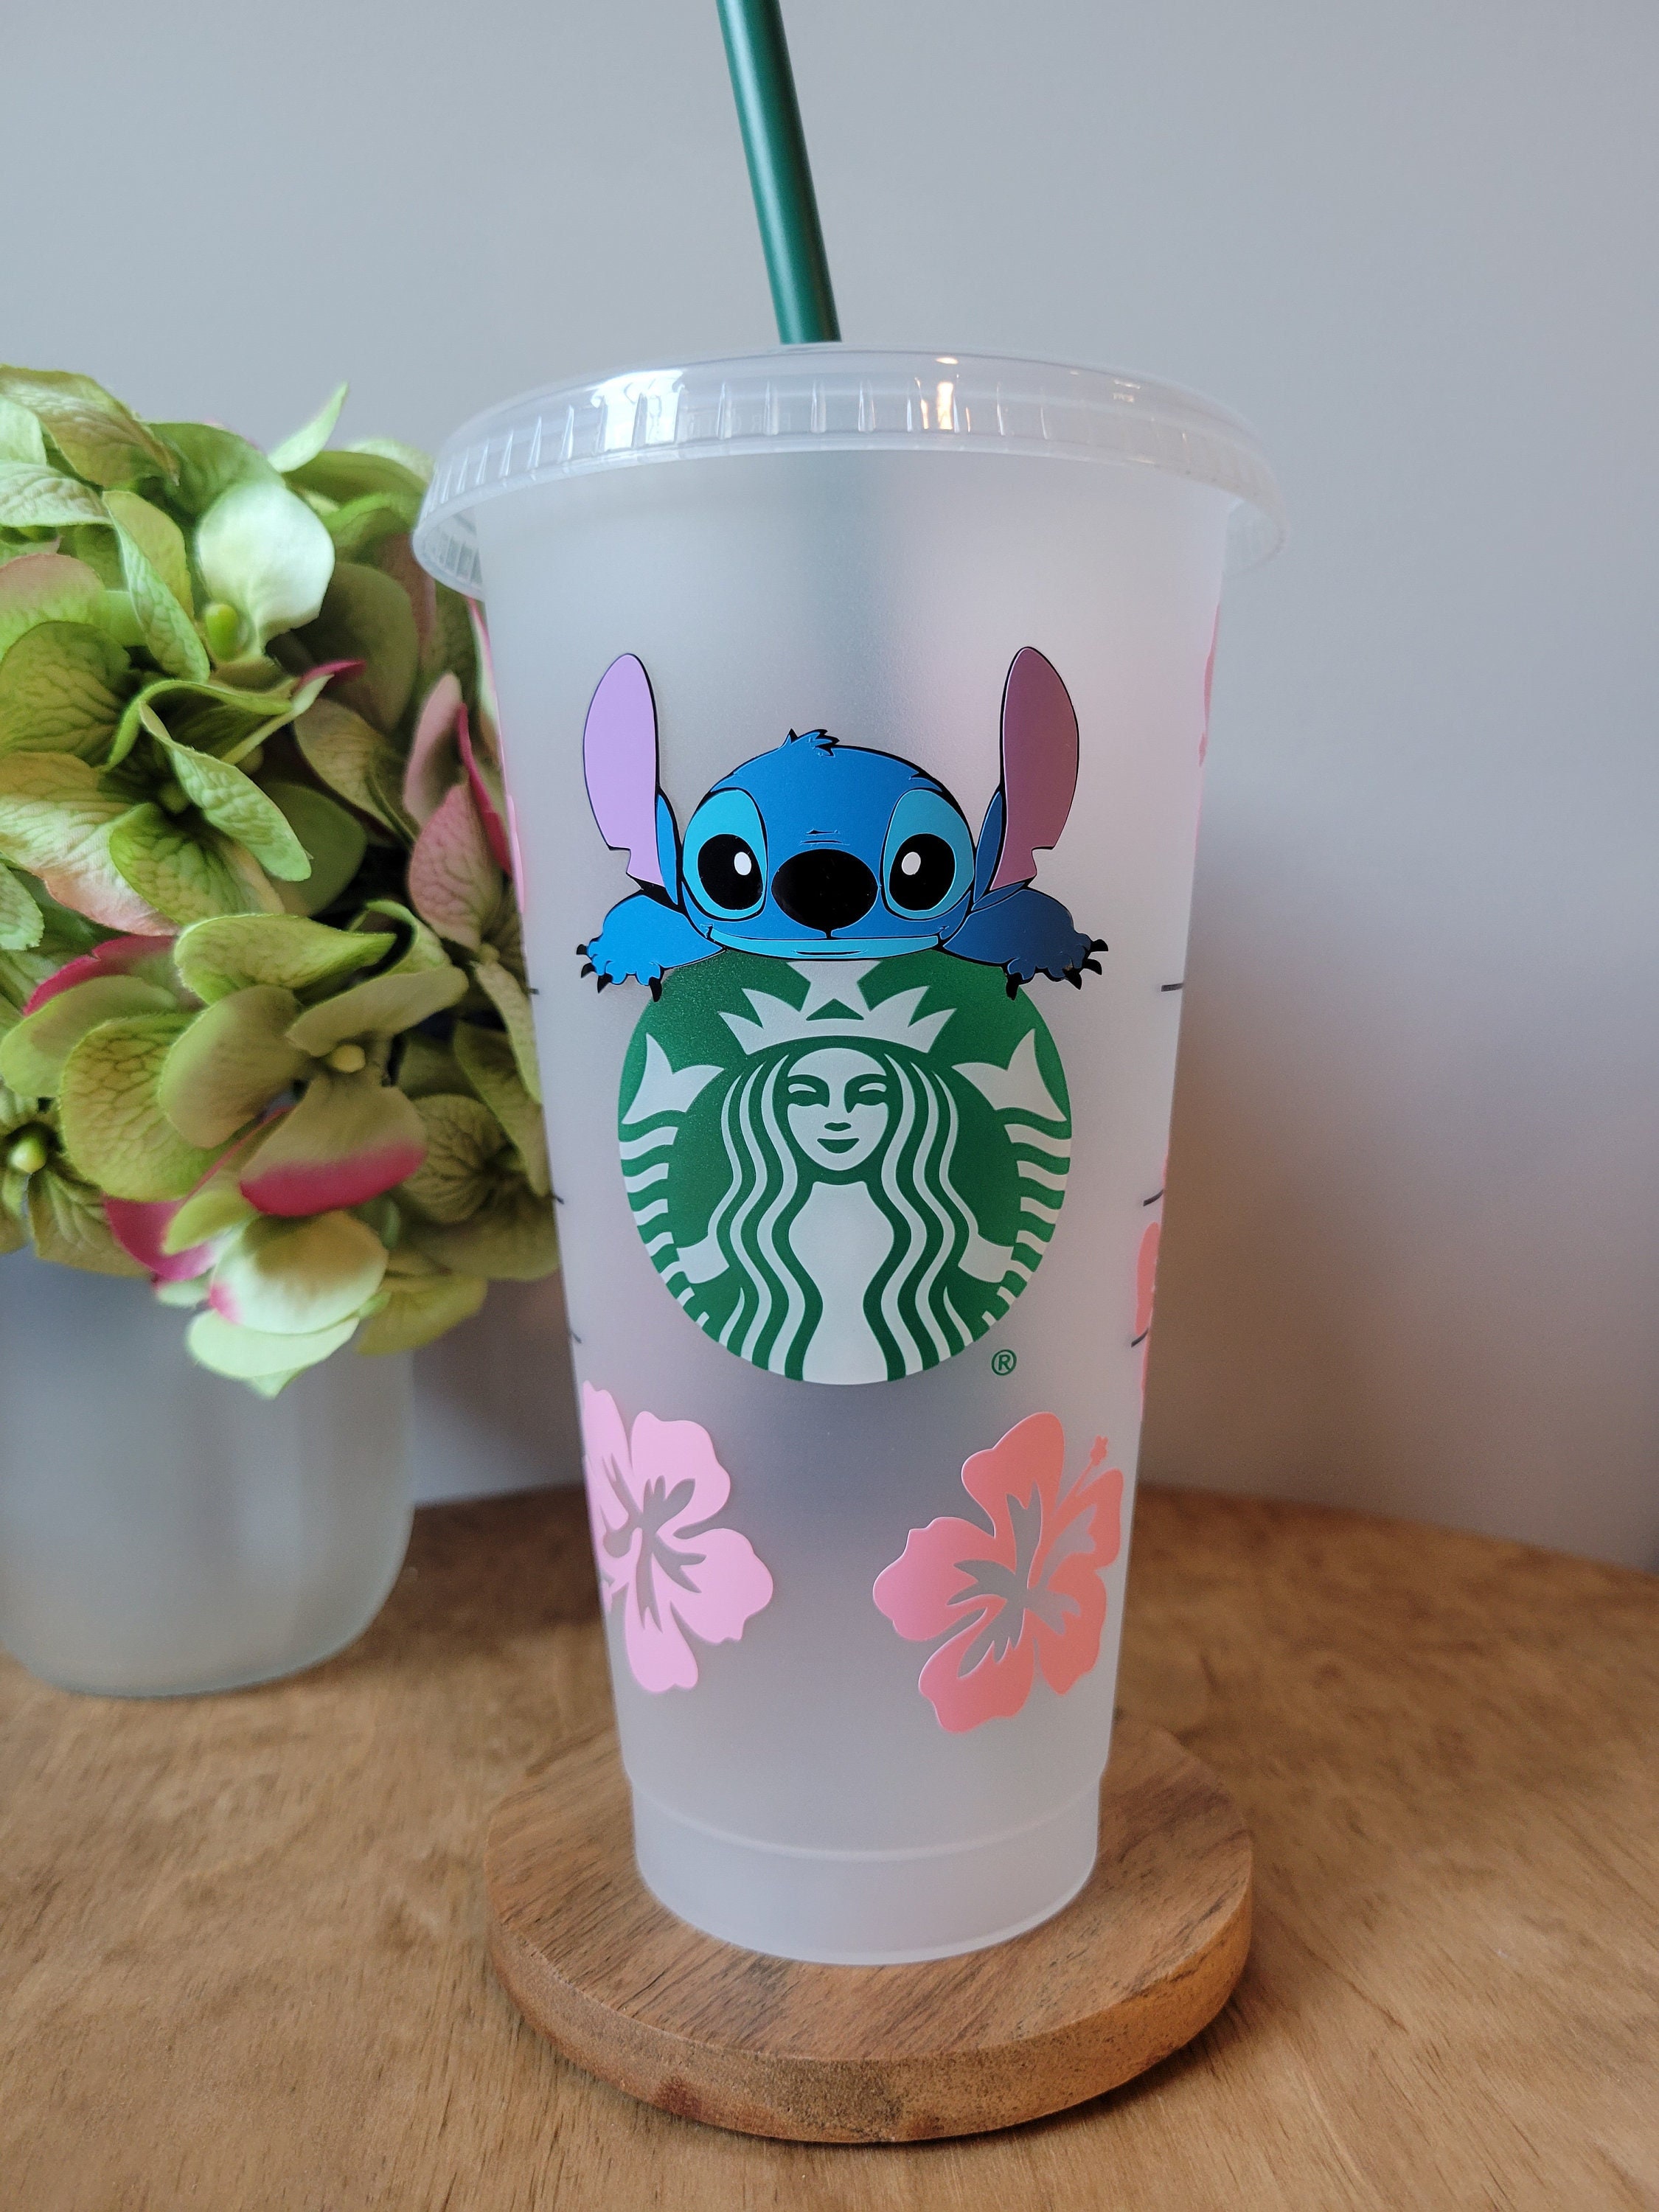 Disney Children Drinking Cup, Disney Stitch Starbucks Cup